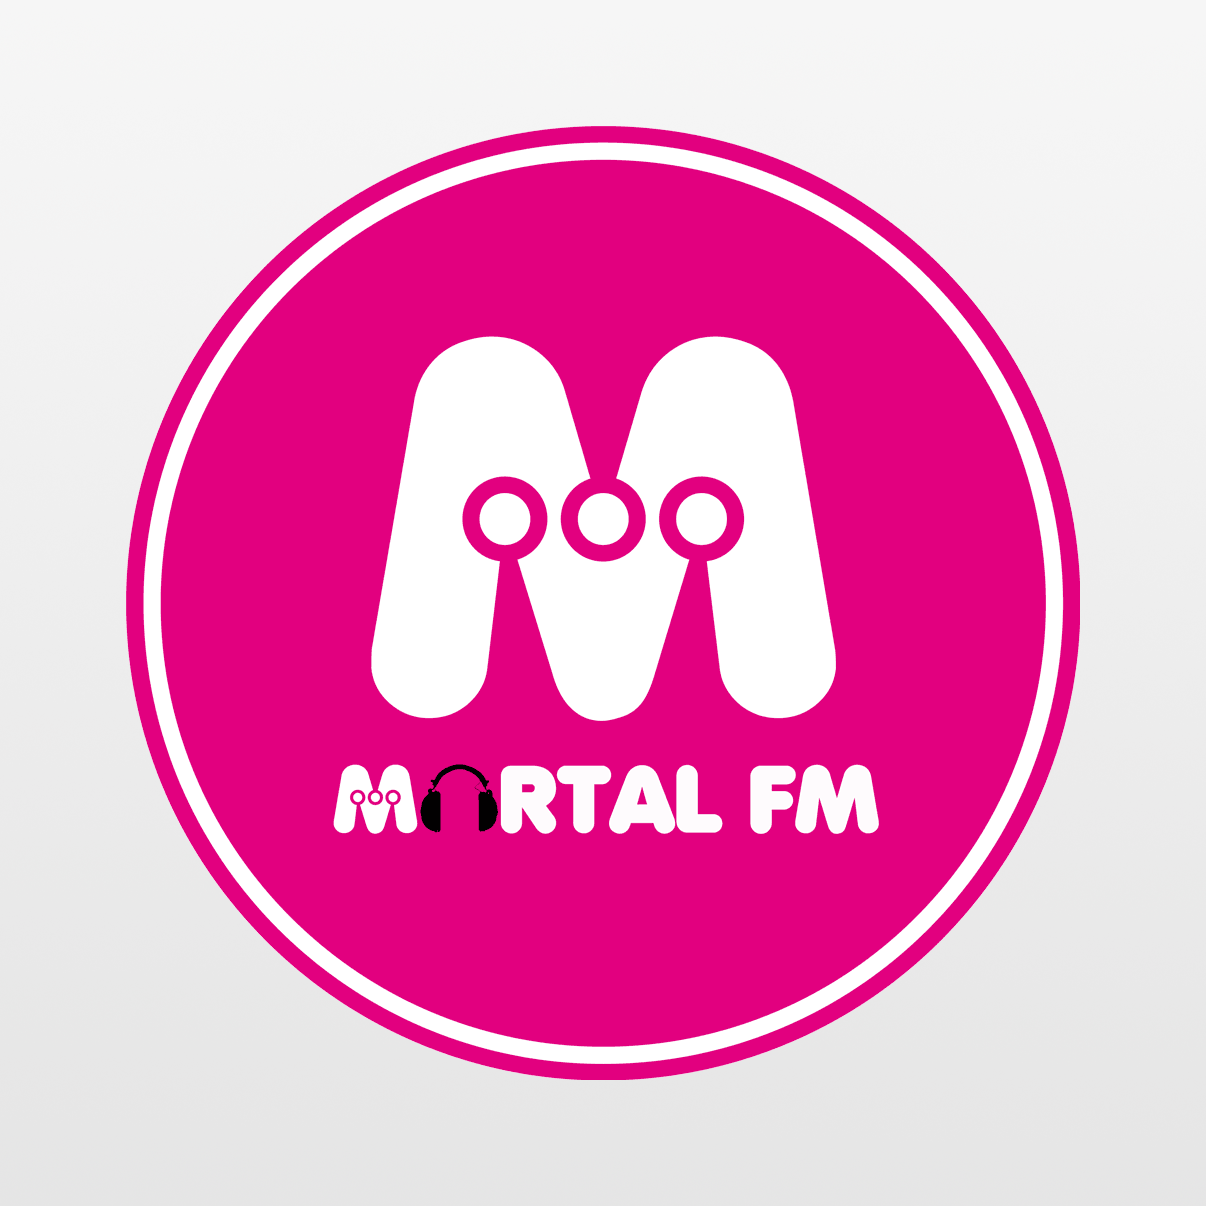 Mortal FM, Noticias